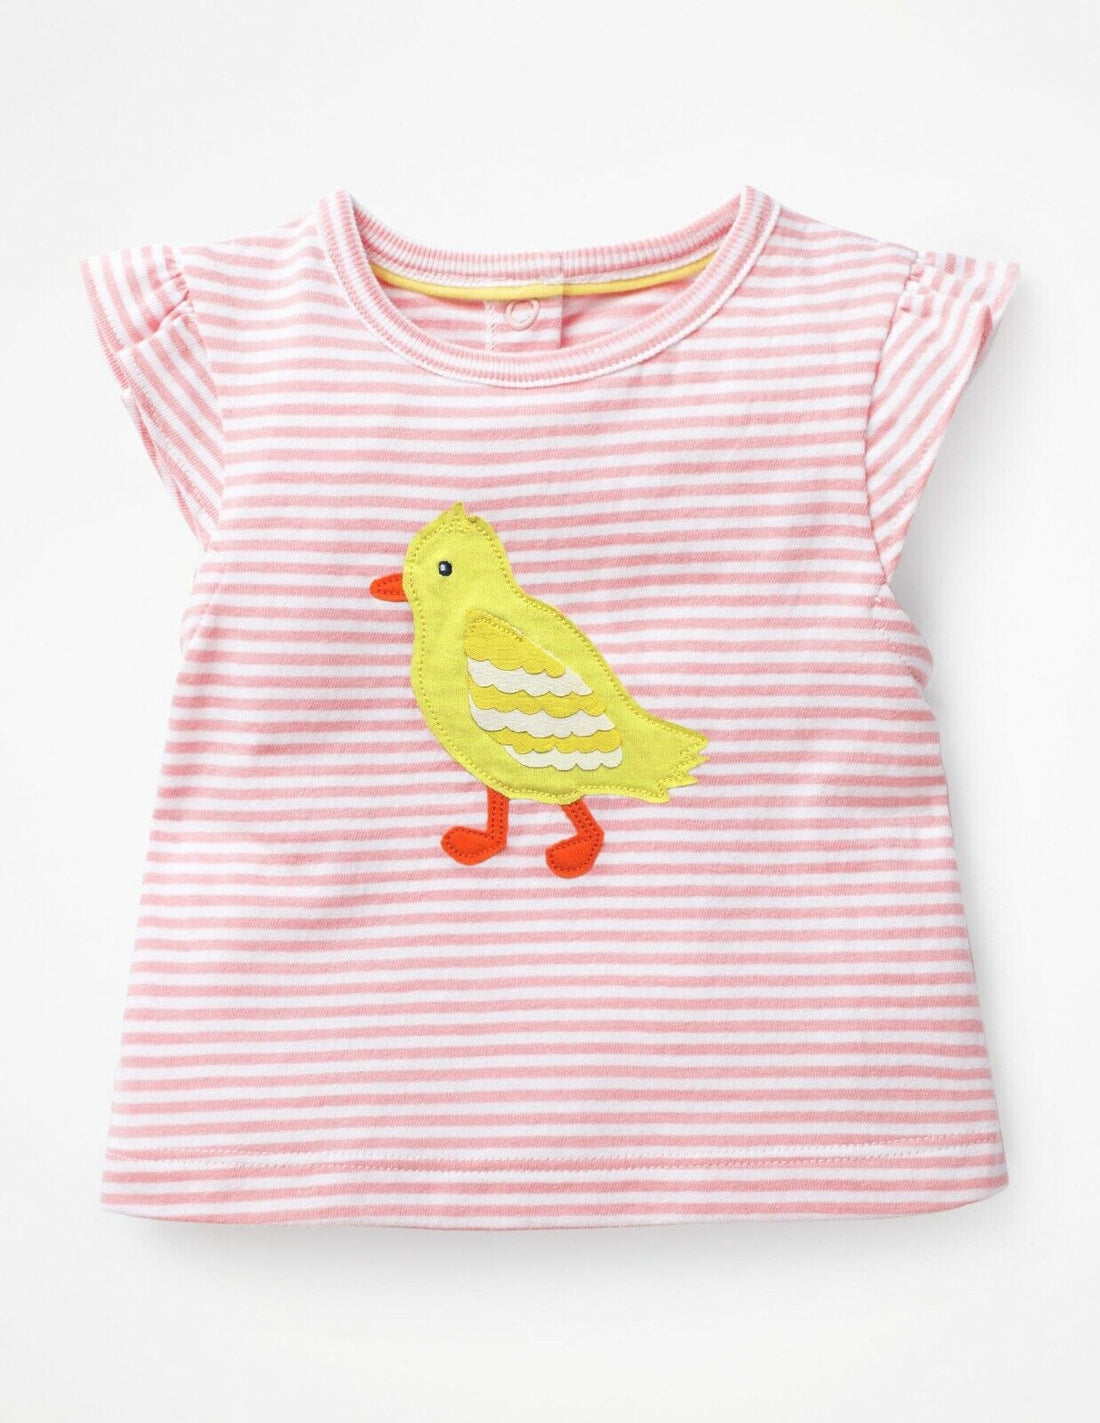 Ex Mini Boden Summer Appliqué T-Shirt  Chick 0-3, 3-6, 12-18 Months